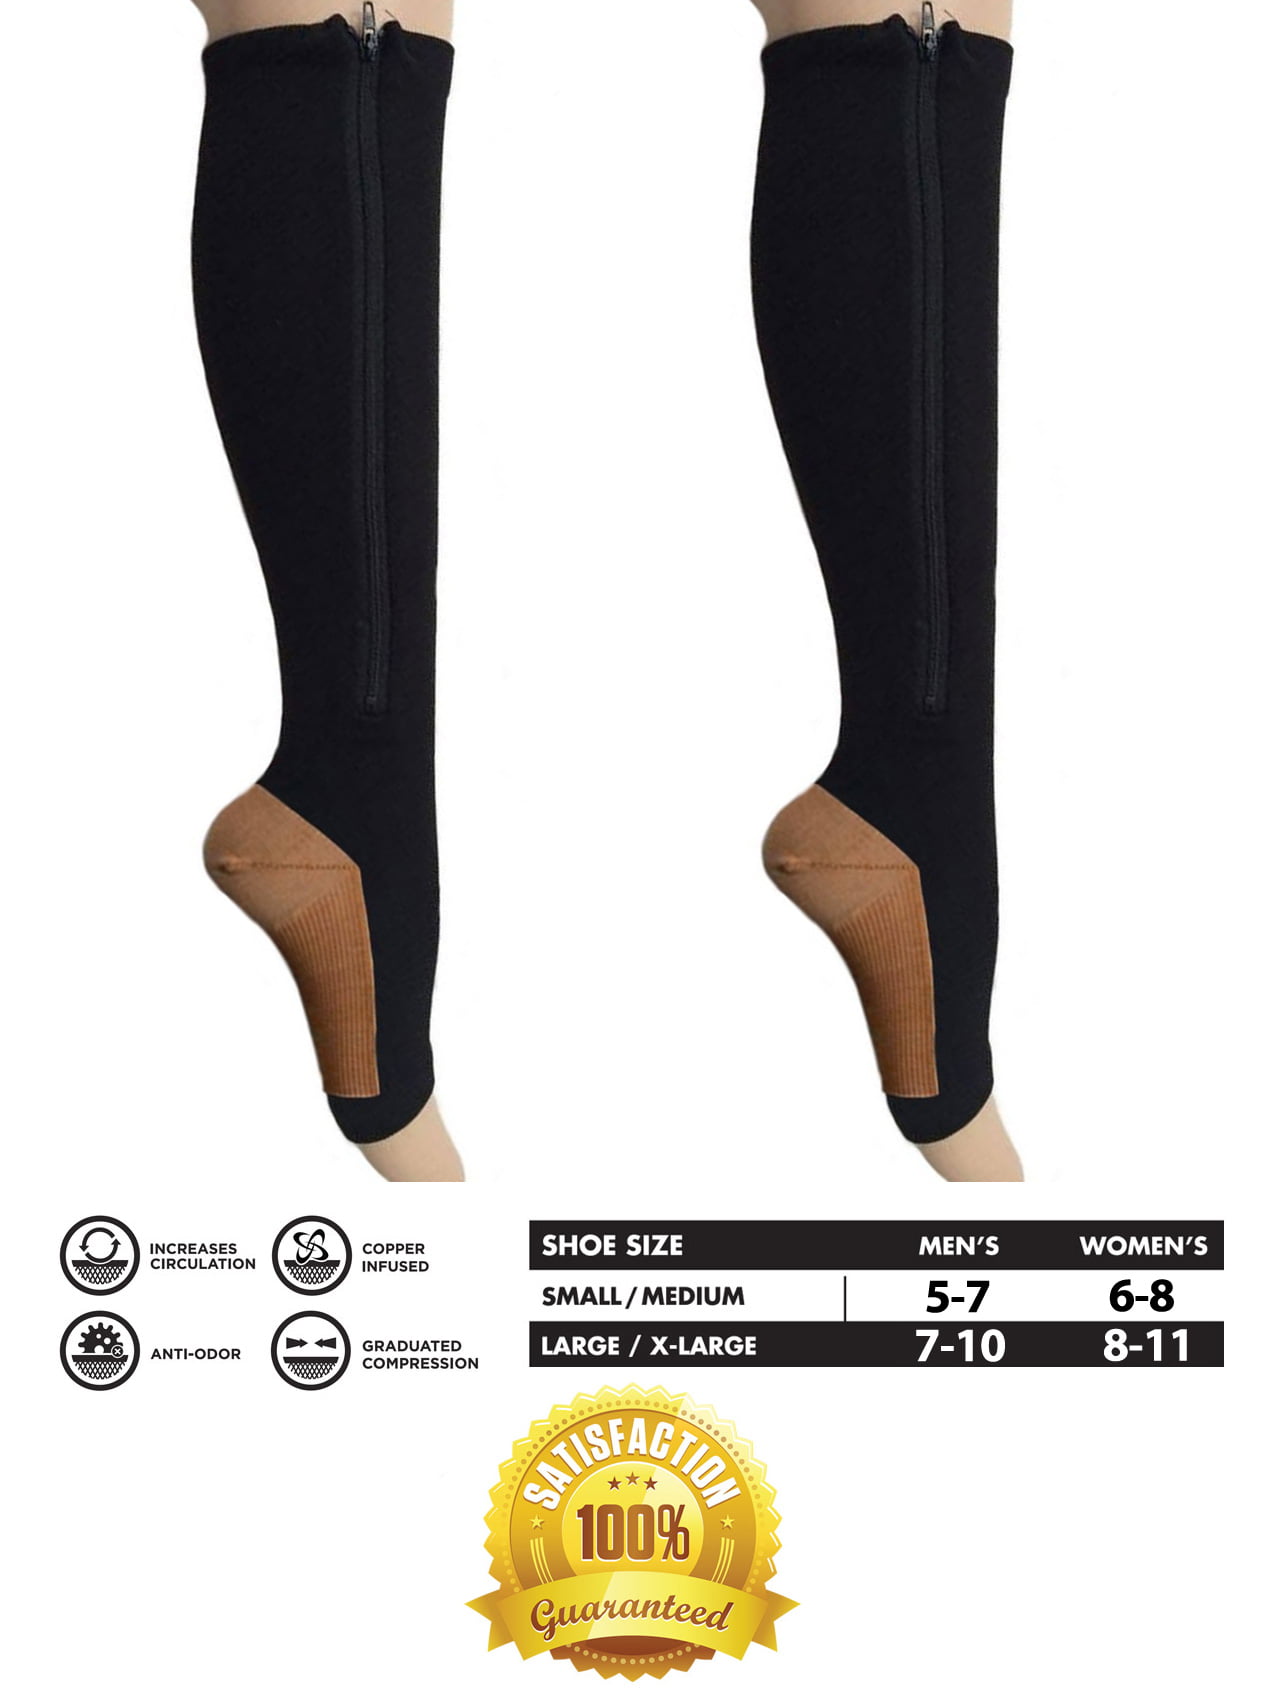 Men's Women's S-XXL Copper Infused Compression Socks Ne S8O4 20-30mmHg Grad T1G4 